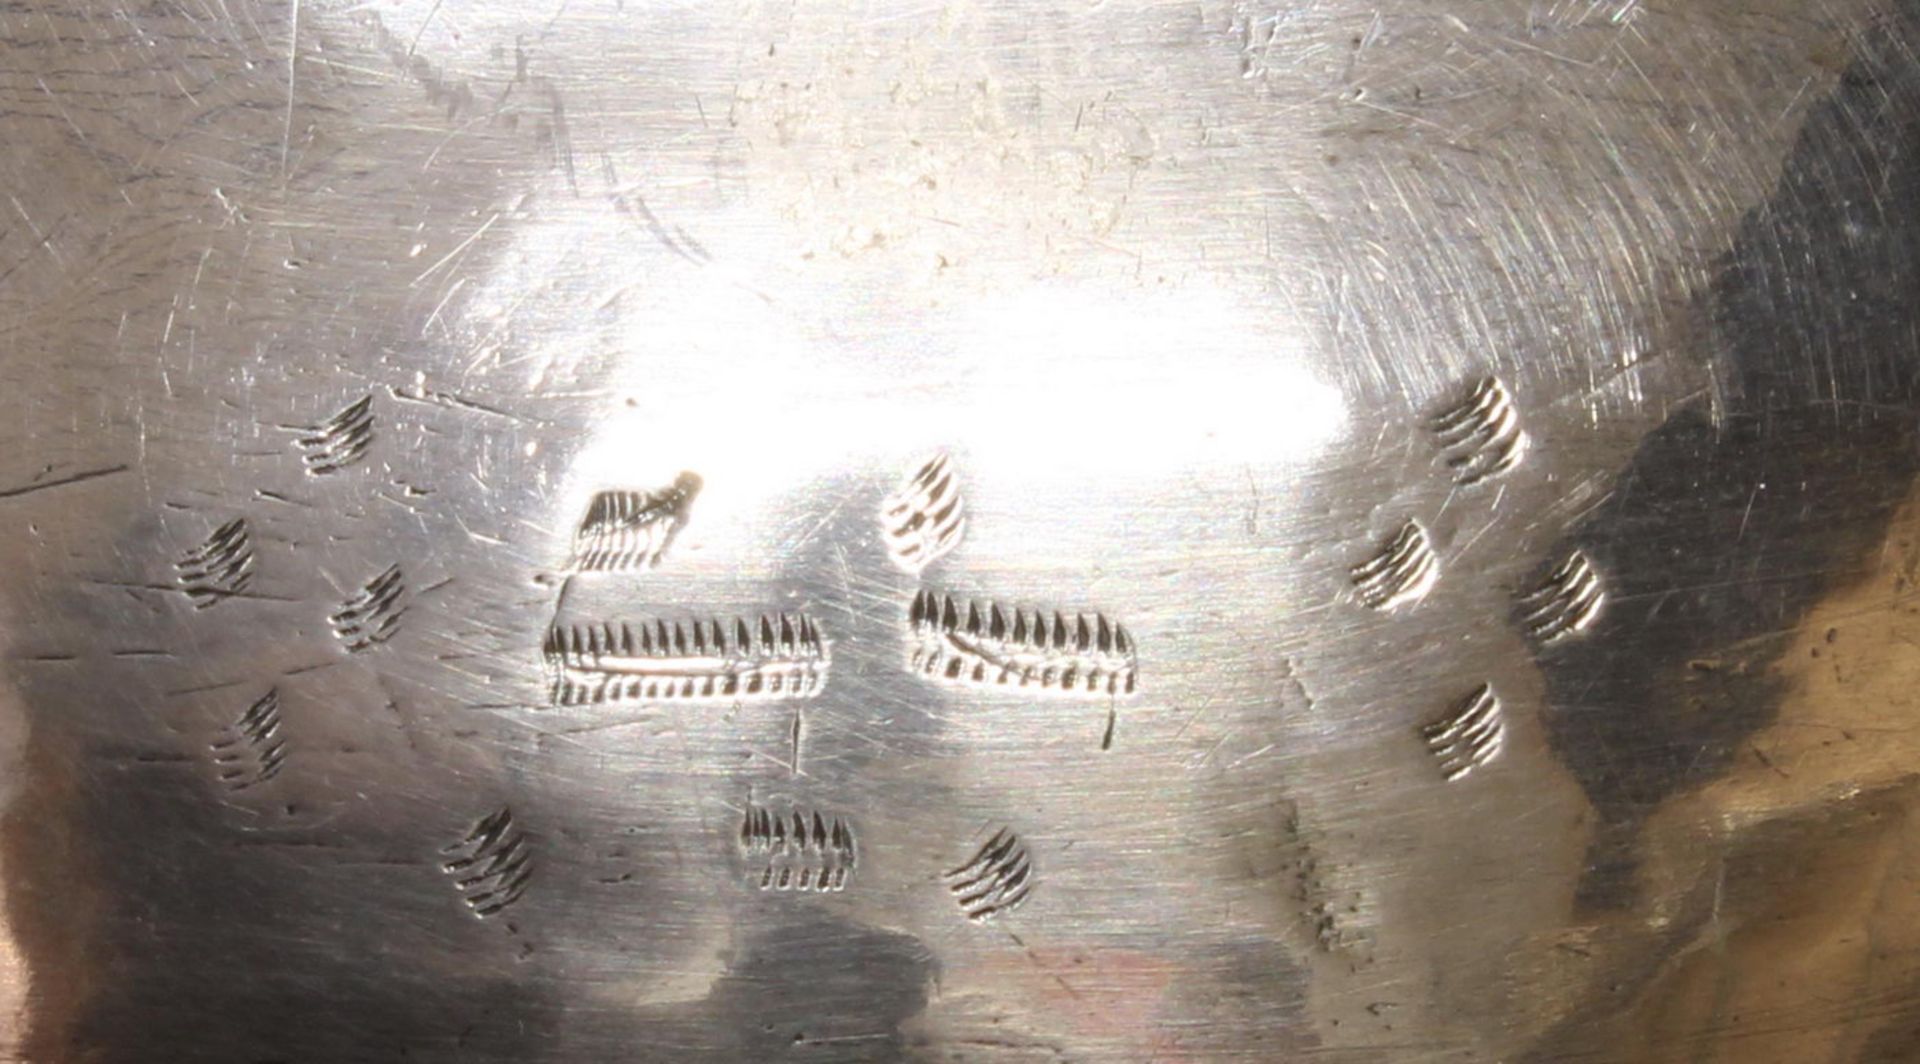 Branntweinschale, Silber, 17./18. Jh., Marken, oval, gebuckelt, Spiegel mit getriebenem Blütendeko - Bild 2 aus 4